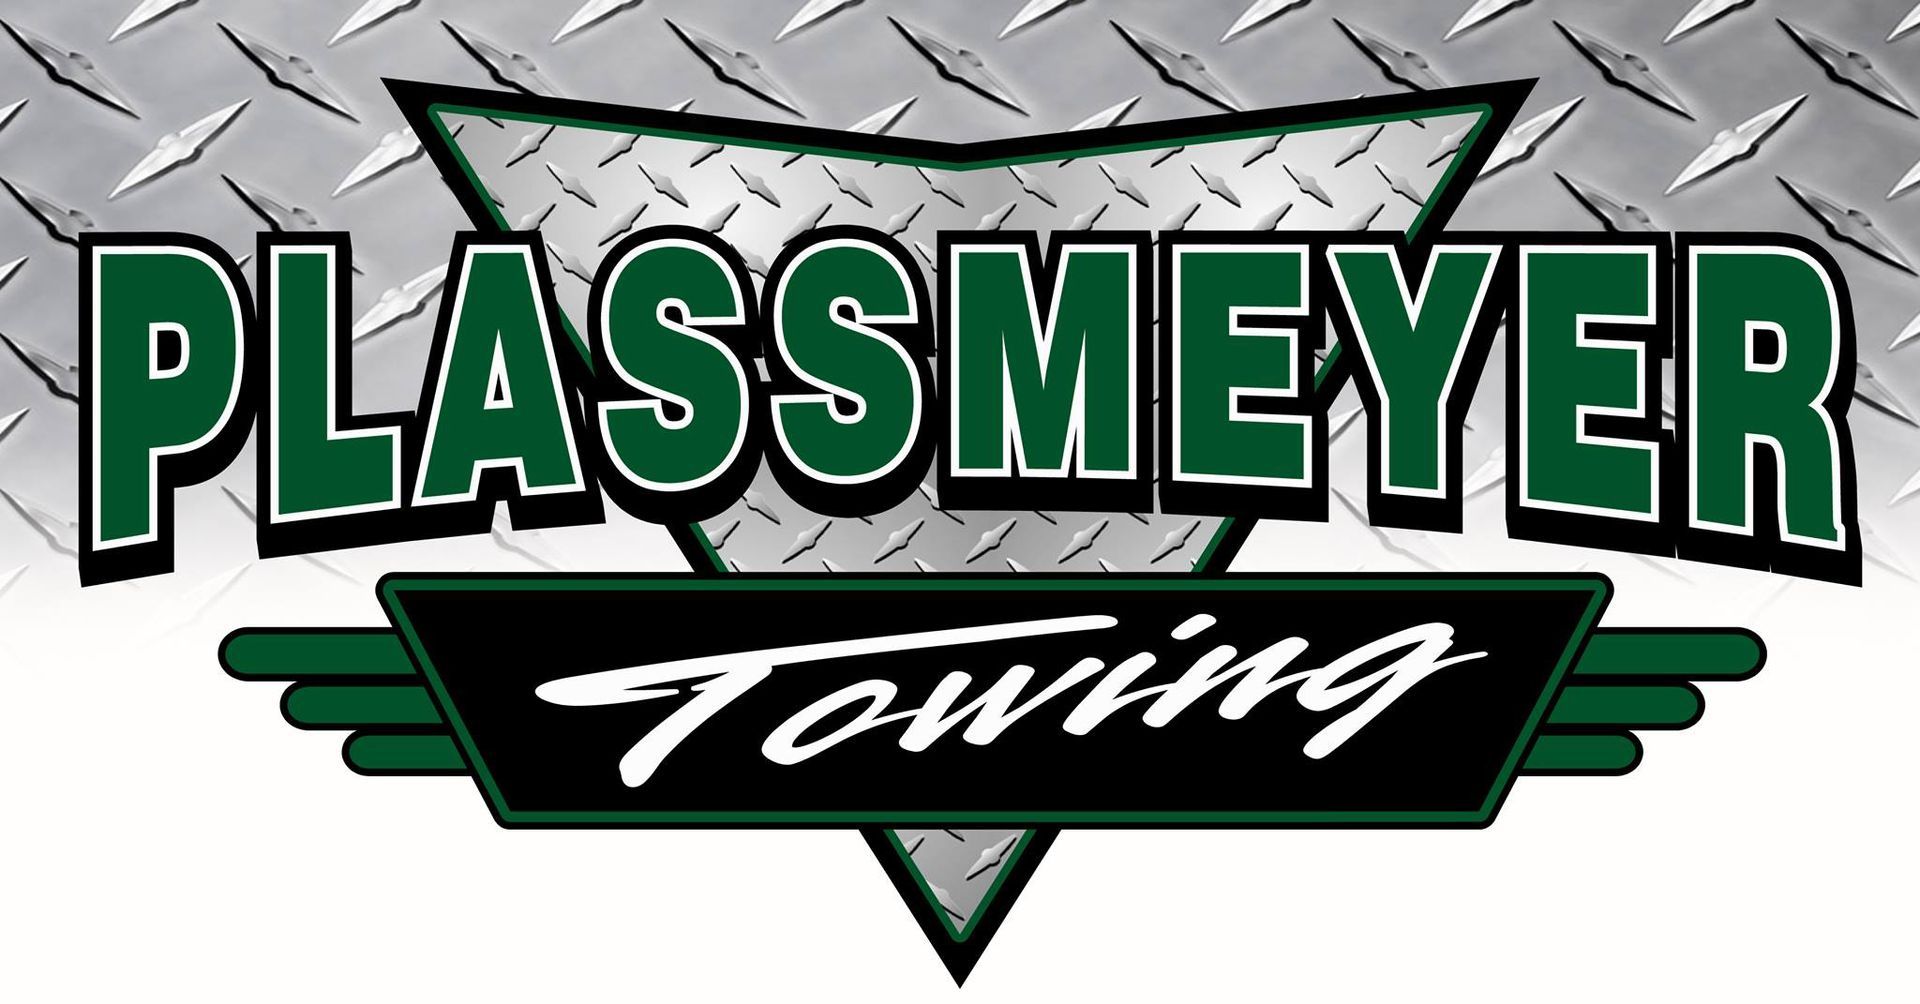 plassmeyer-towing-logo